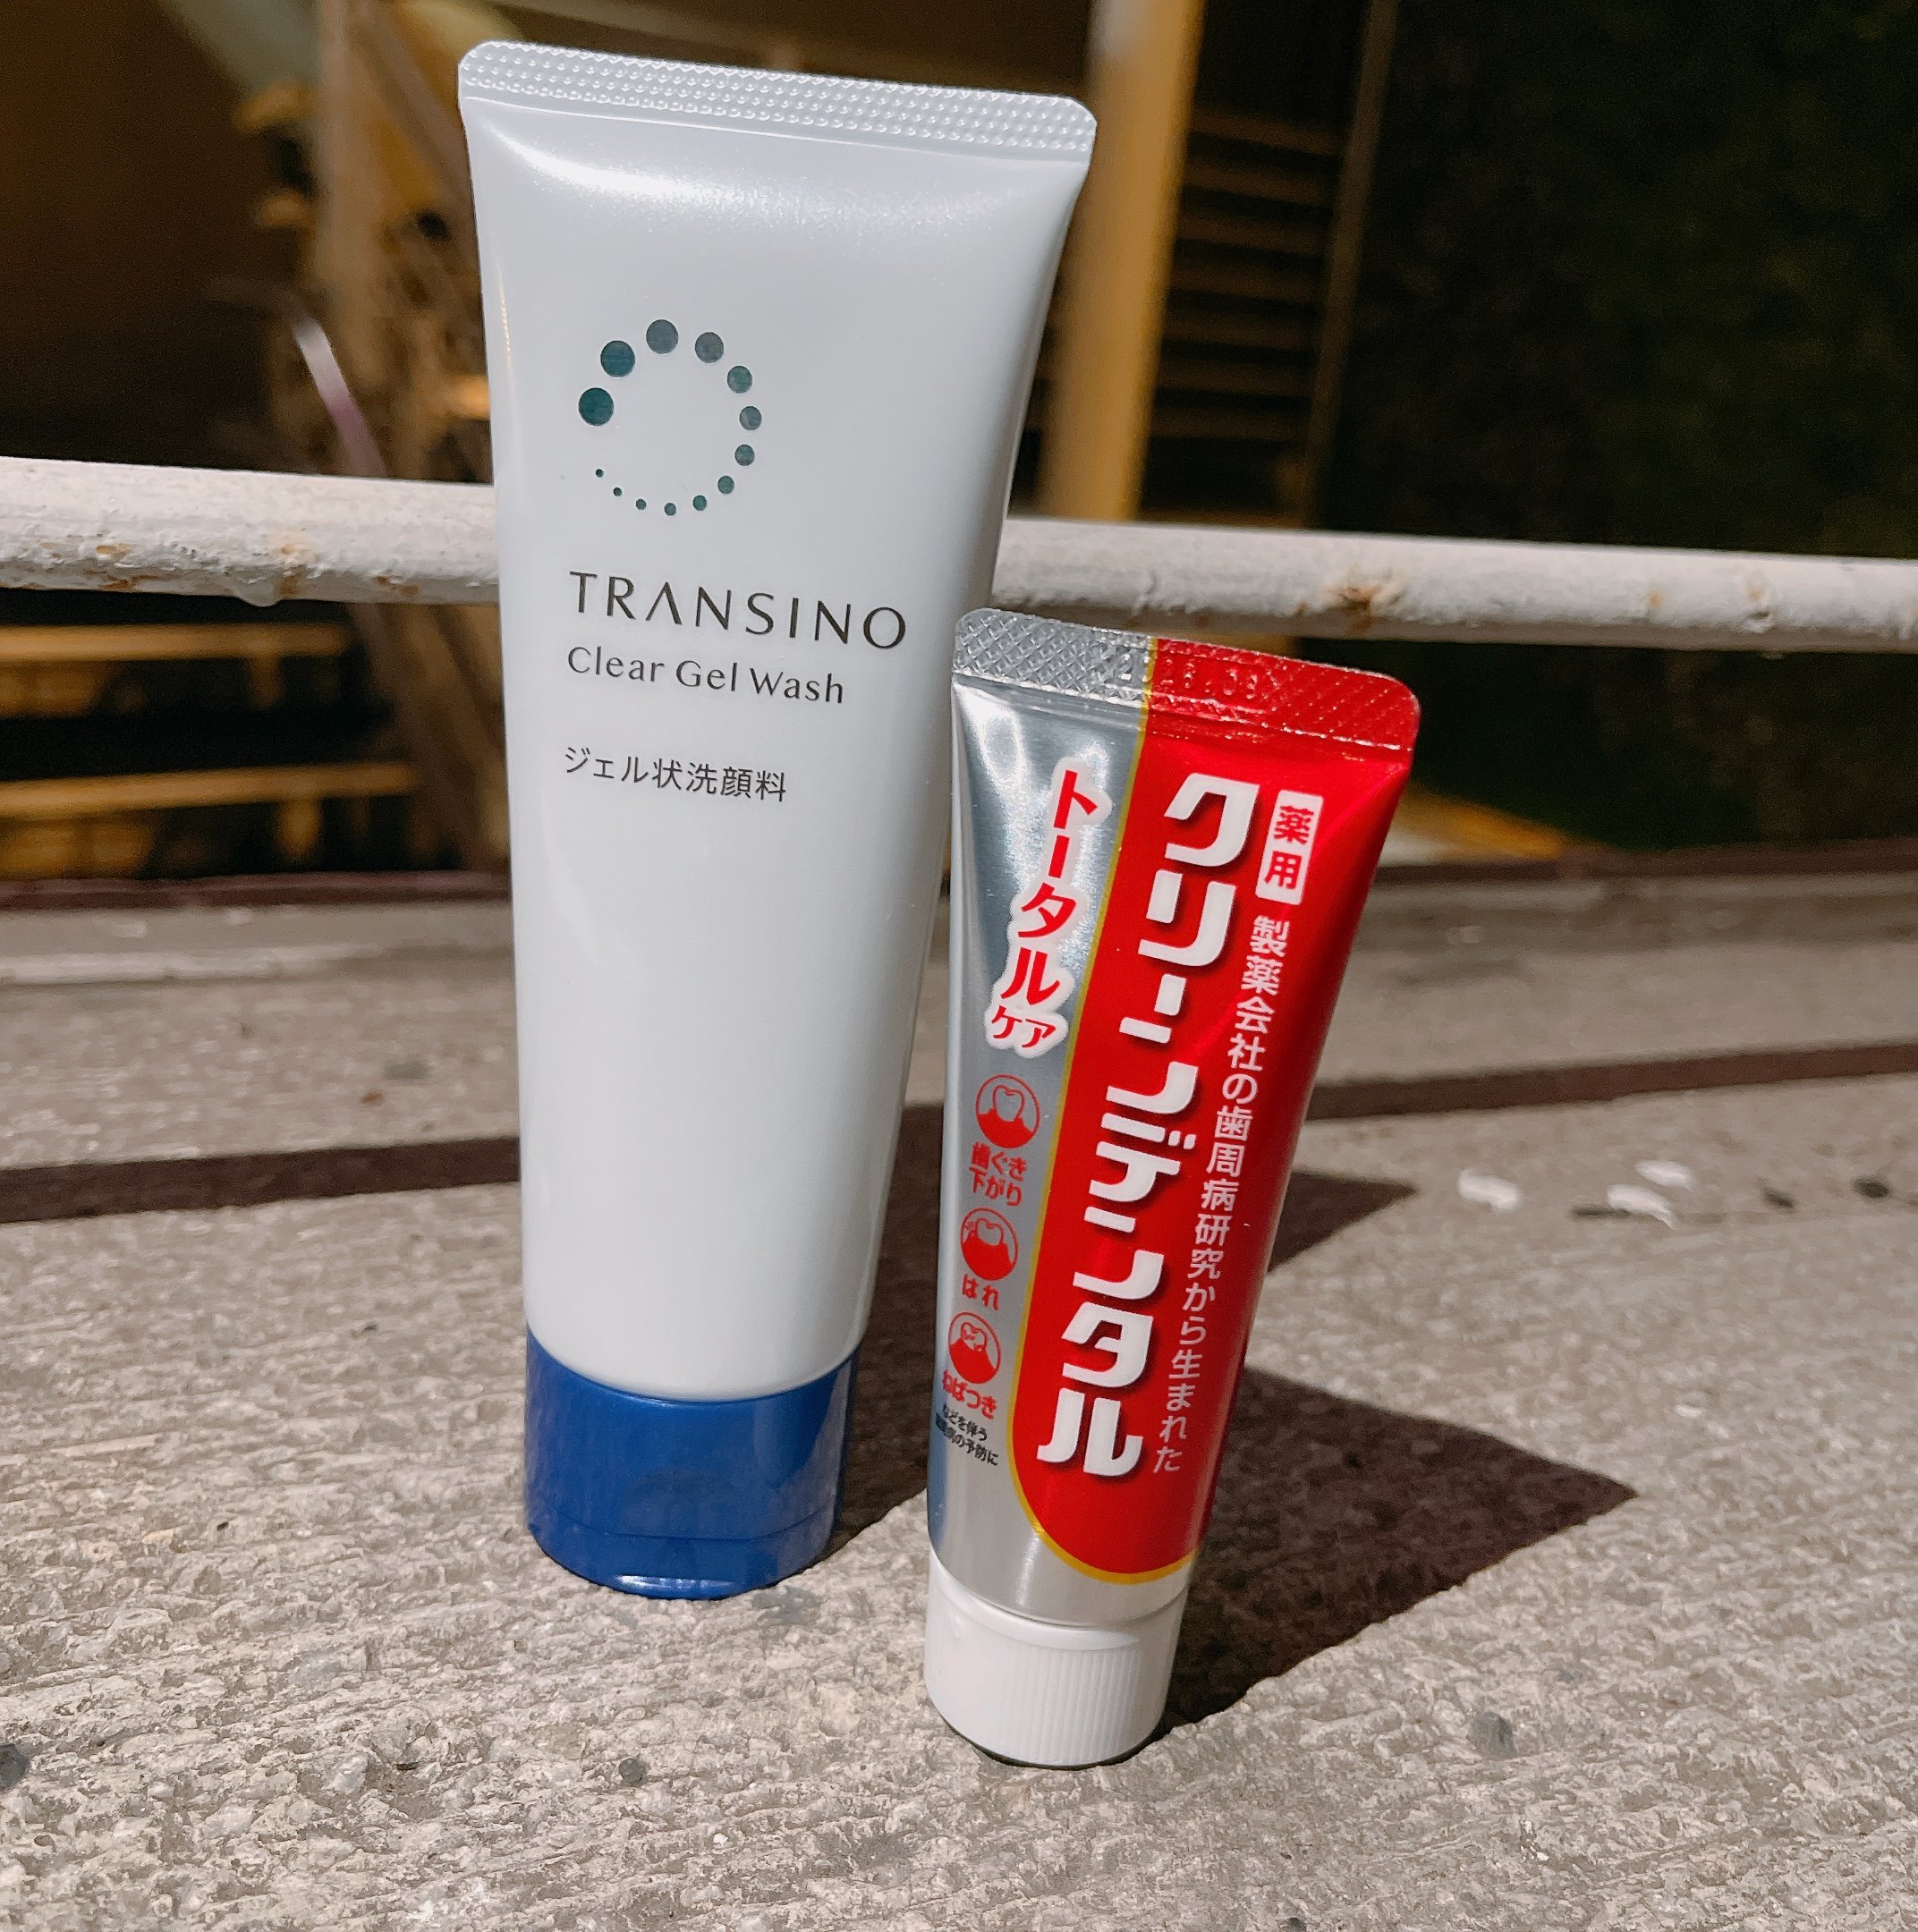 日本回購率NO.1 第一三共小紅管護理牙膏好清新&TRANSINO毛孔卸妝洗面凝膠